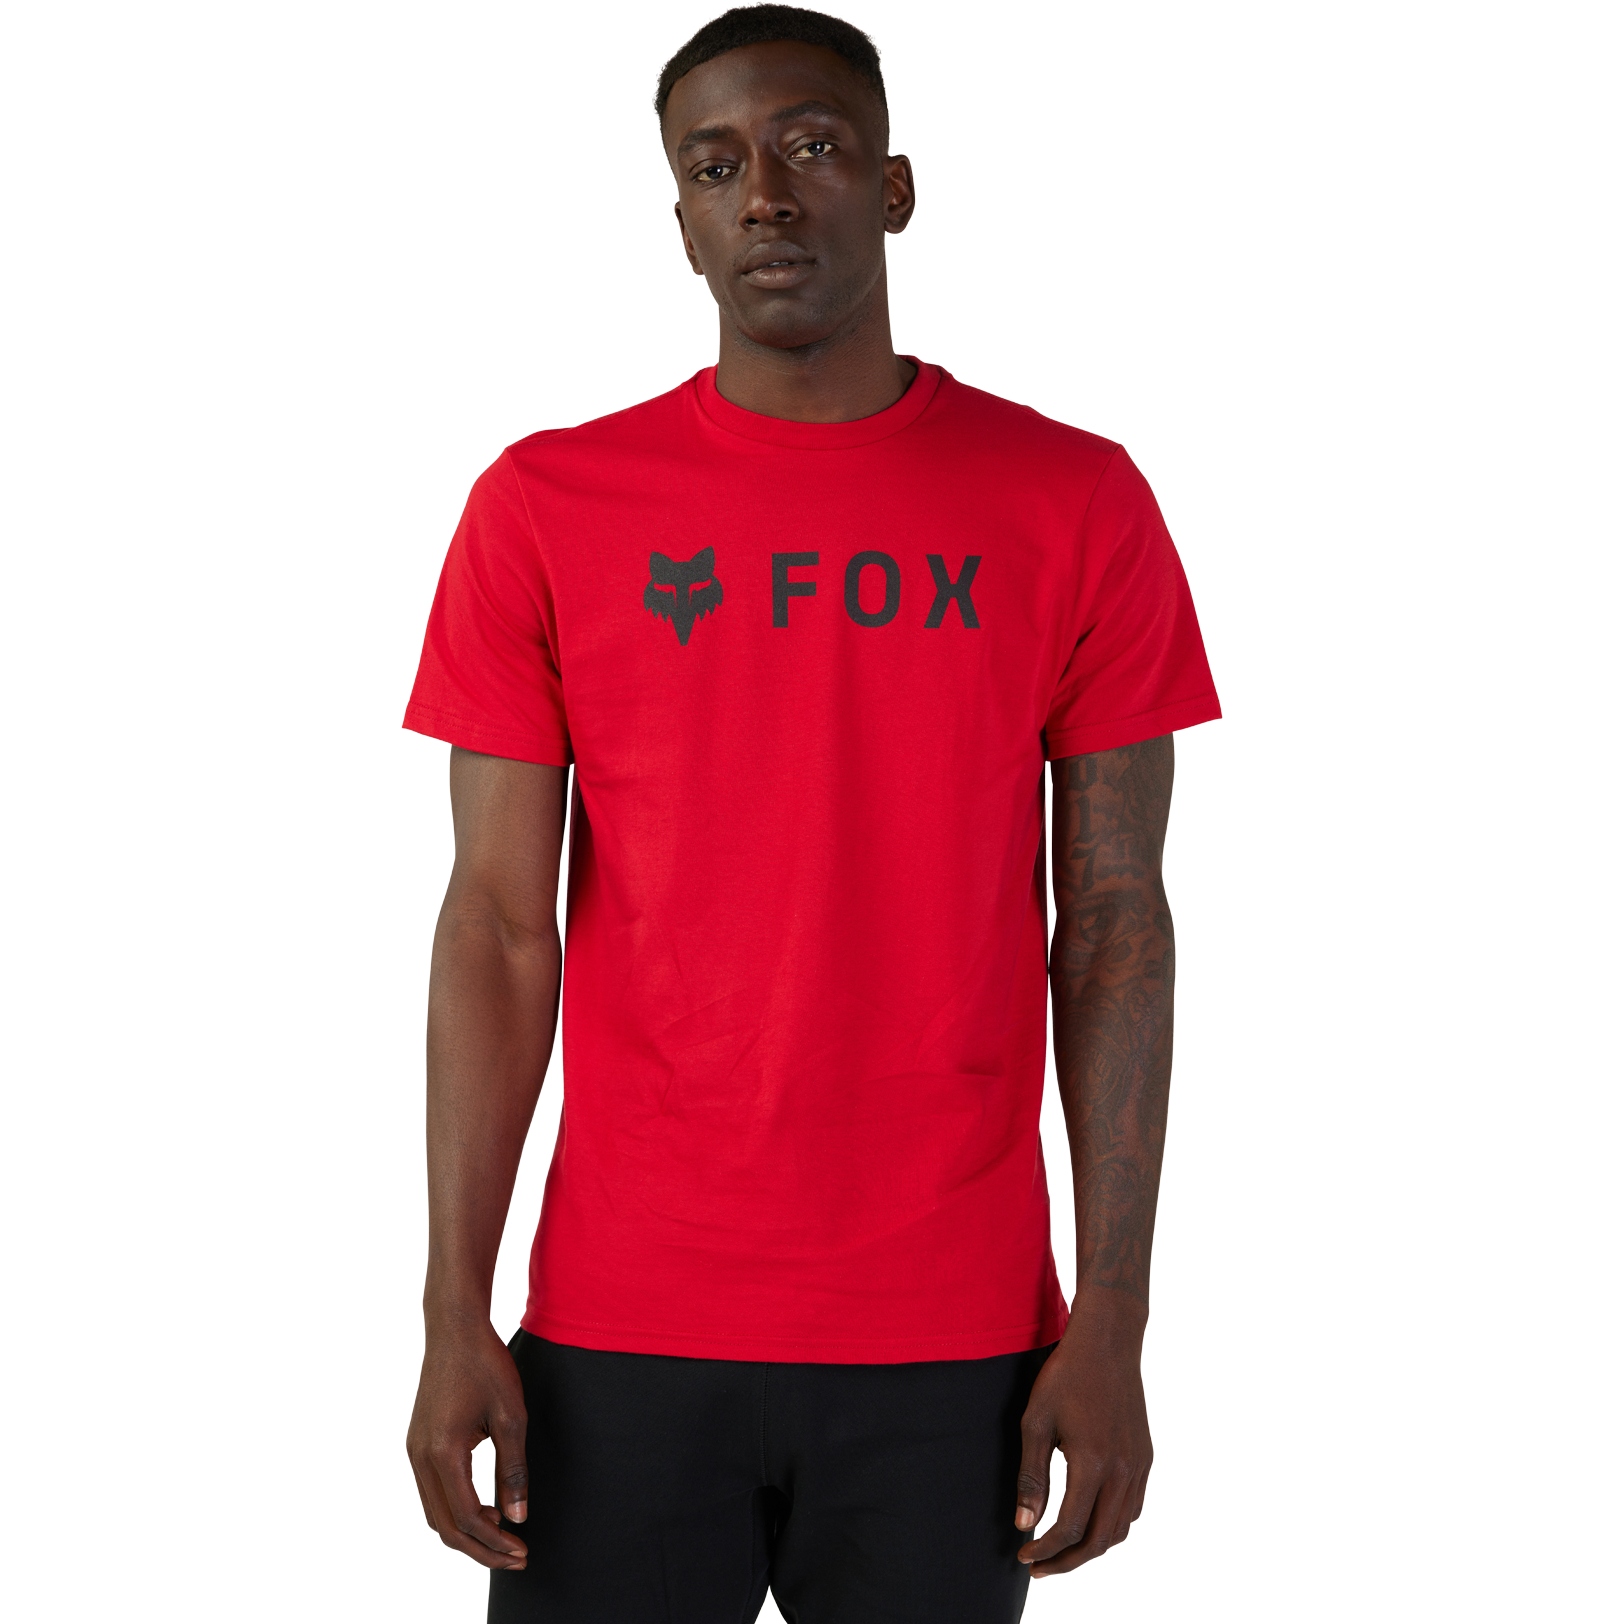 Produktbild von FOX Absolute Premium Kurzarmshirt Herren - flame red